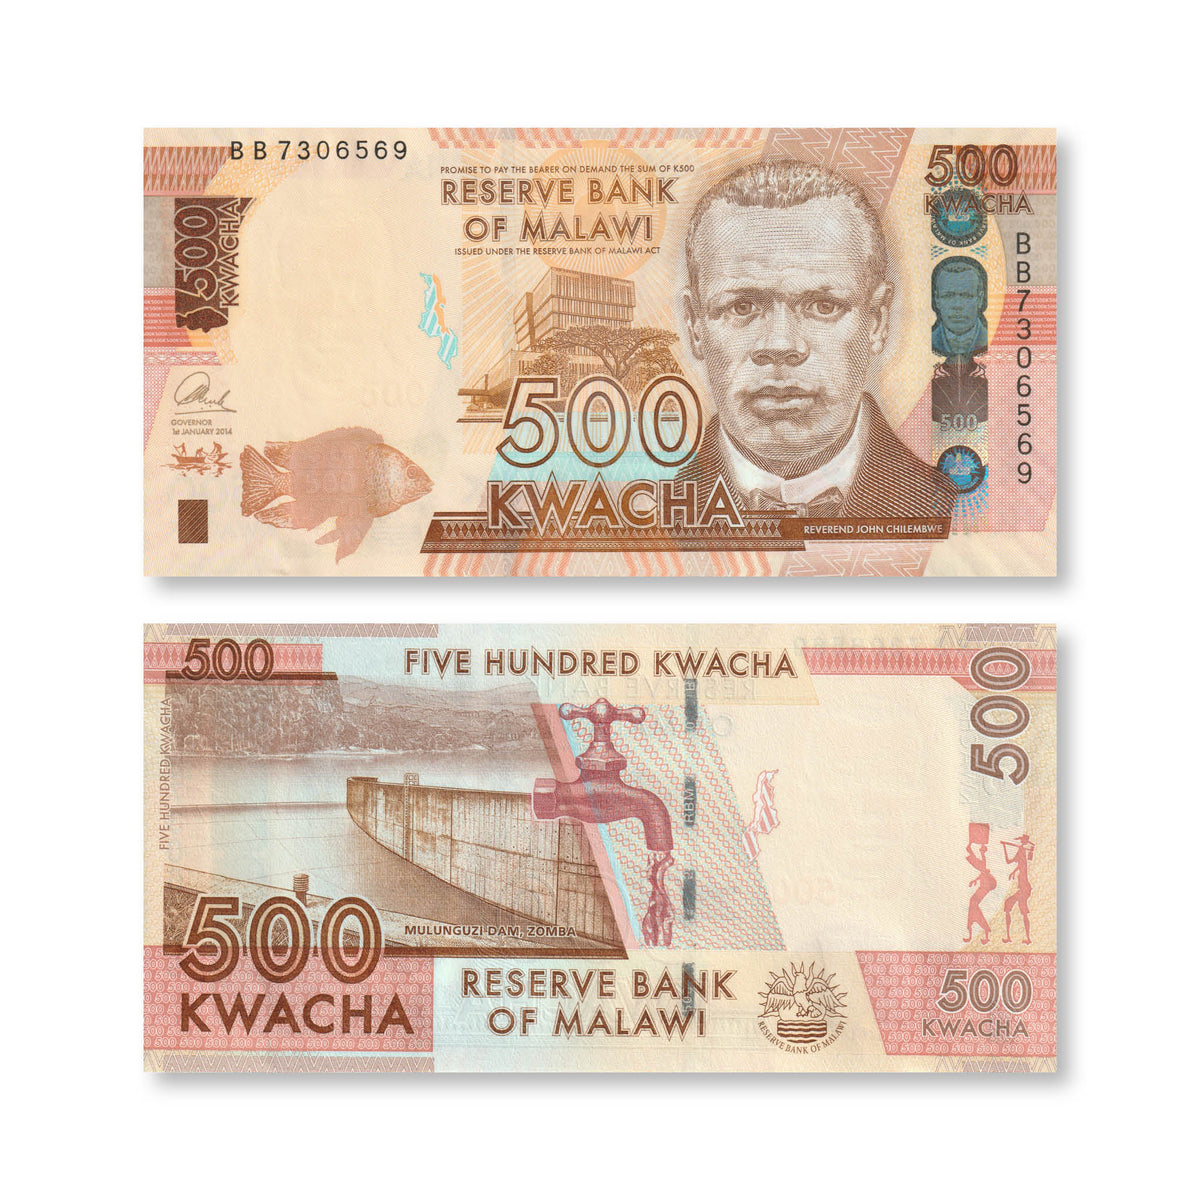 Malawi 500 Kwacha, 2014, B161a, P66, UNC - Robert's World Money - World Banknotes